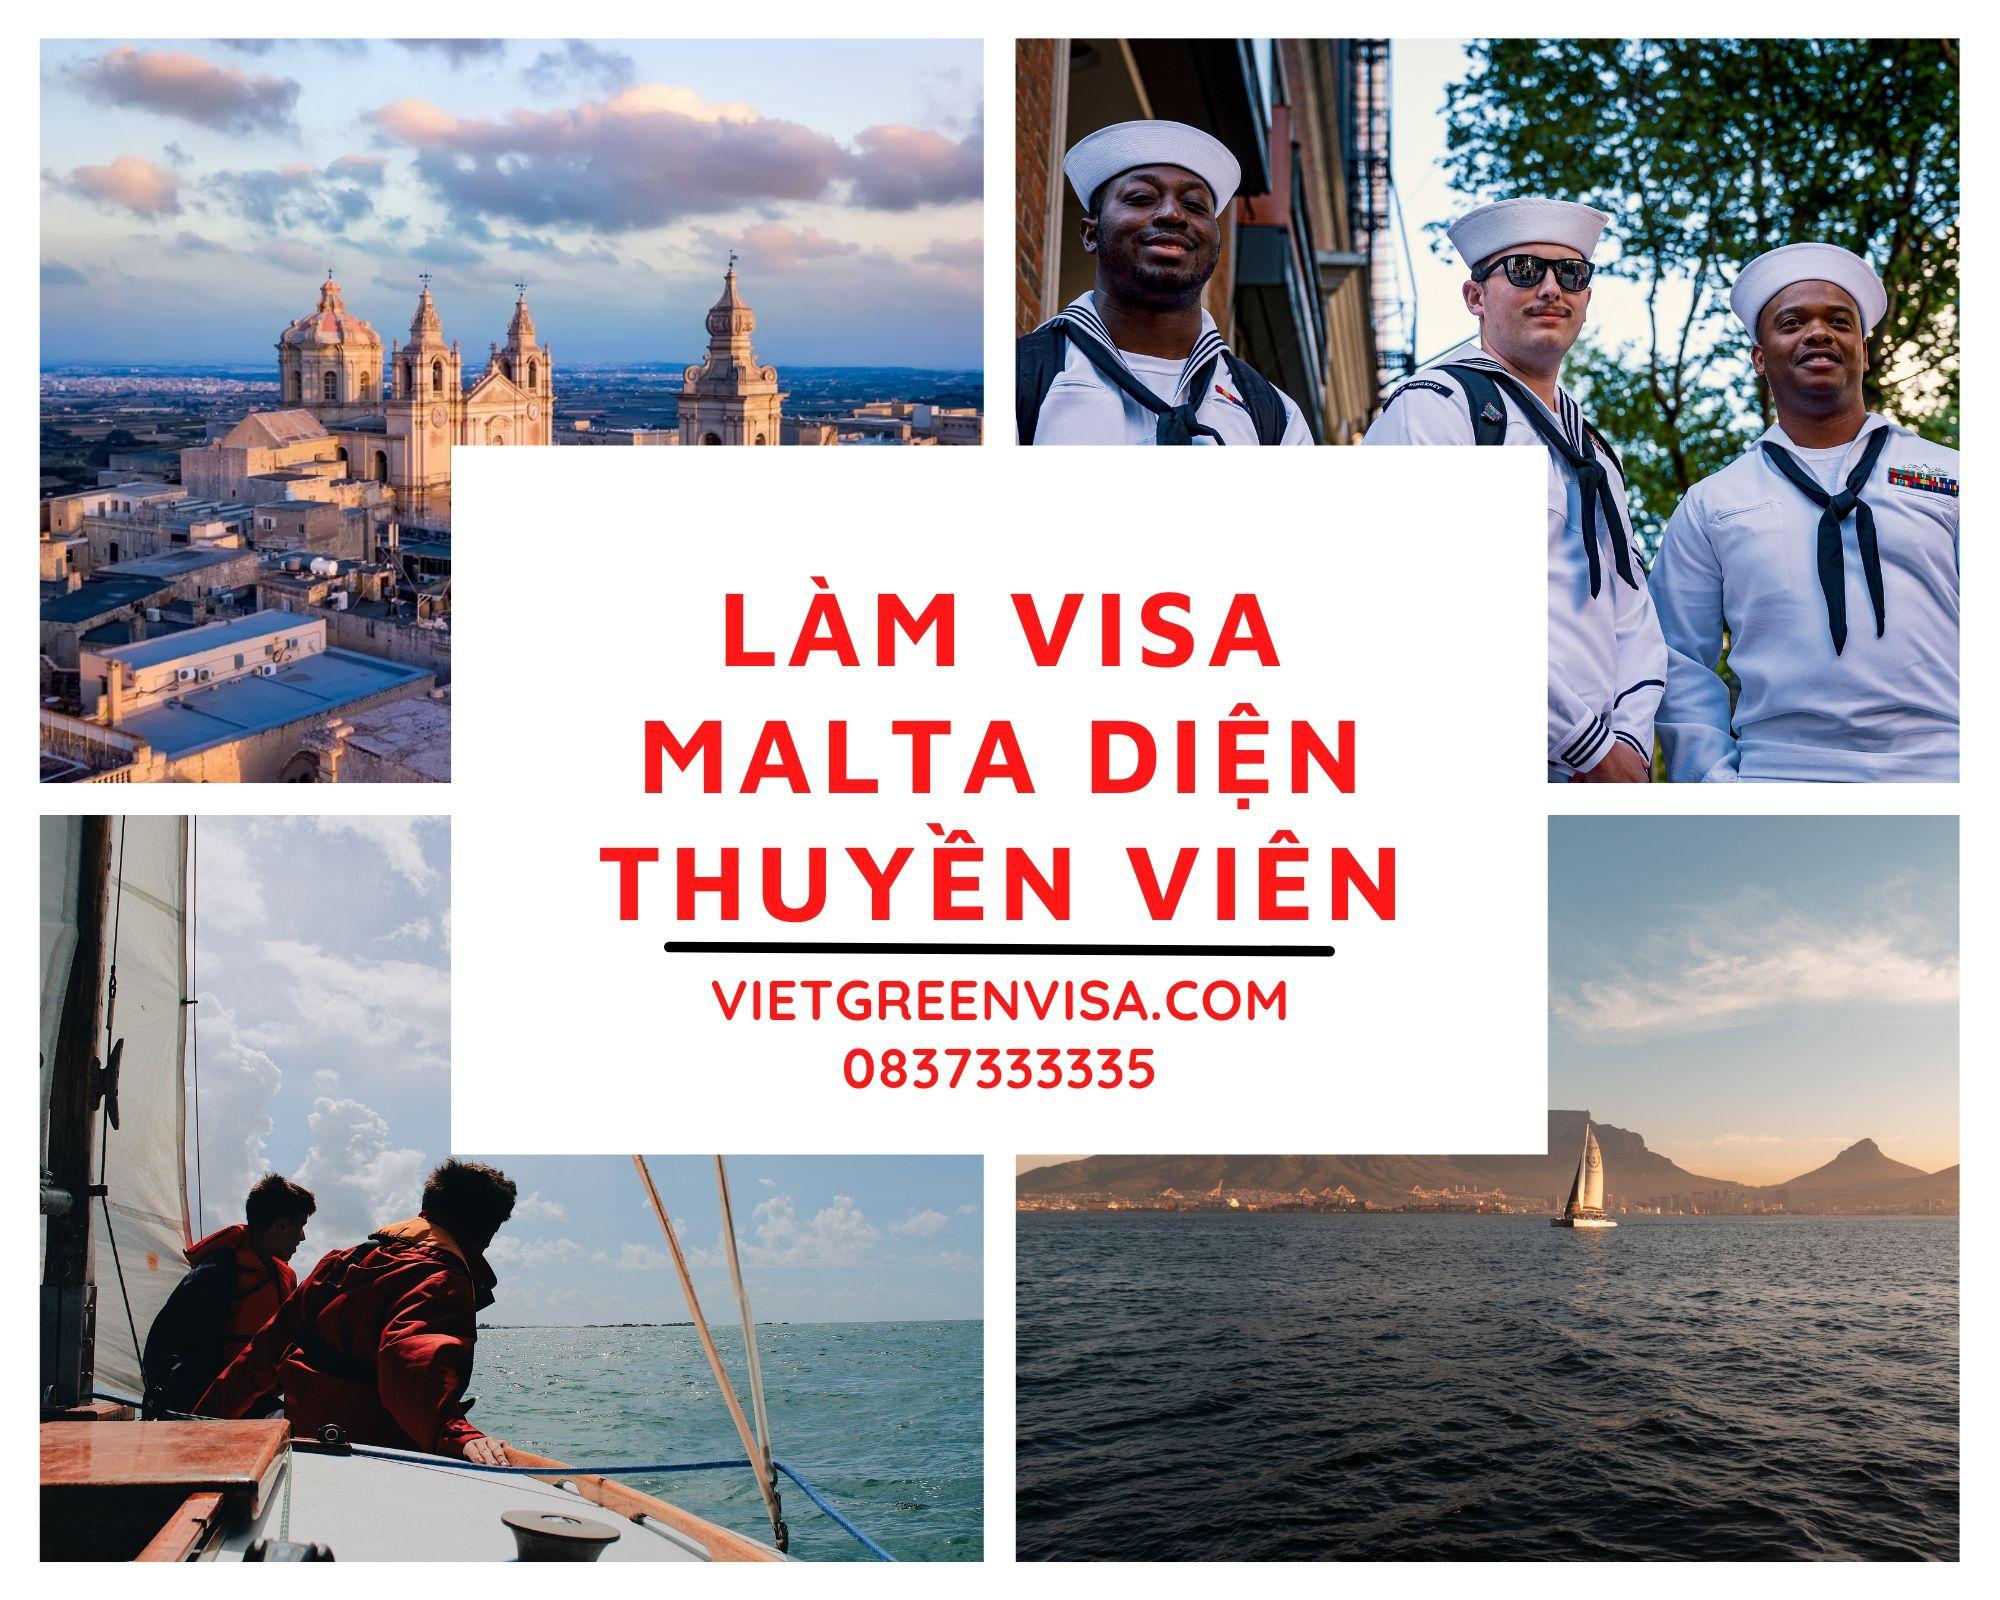 Dịch vụ xin visa Malta diện Thuyền viên